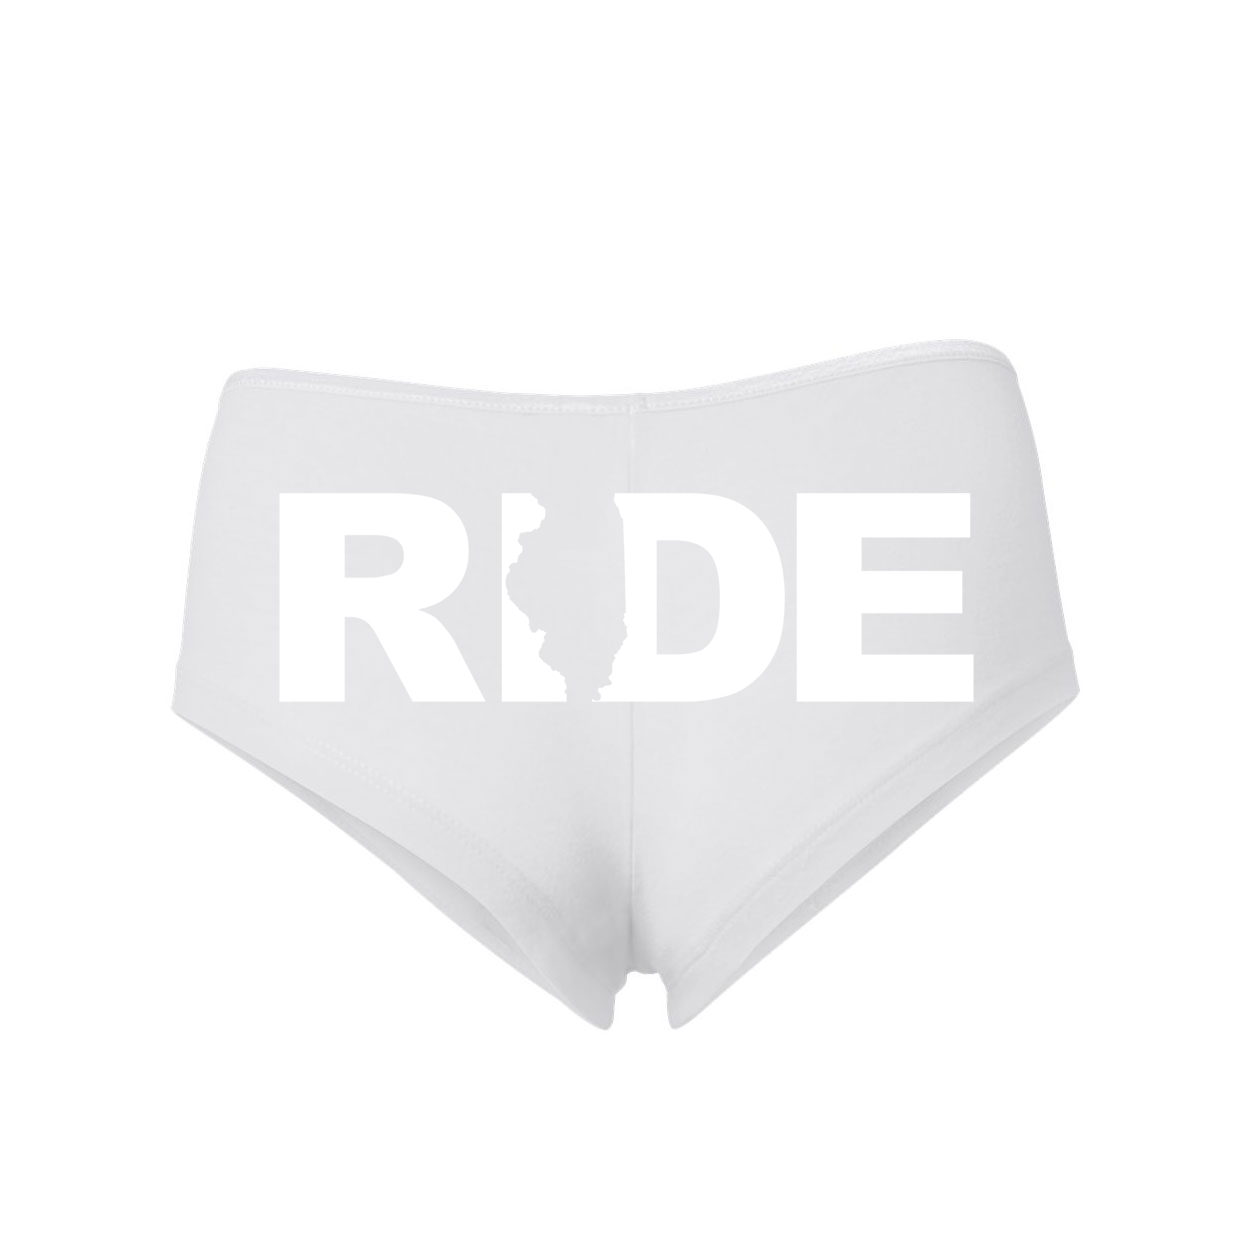 Ride Illinois Classic Women's Booty Shorts White (White Logo)